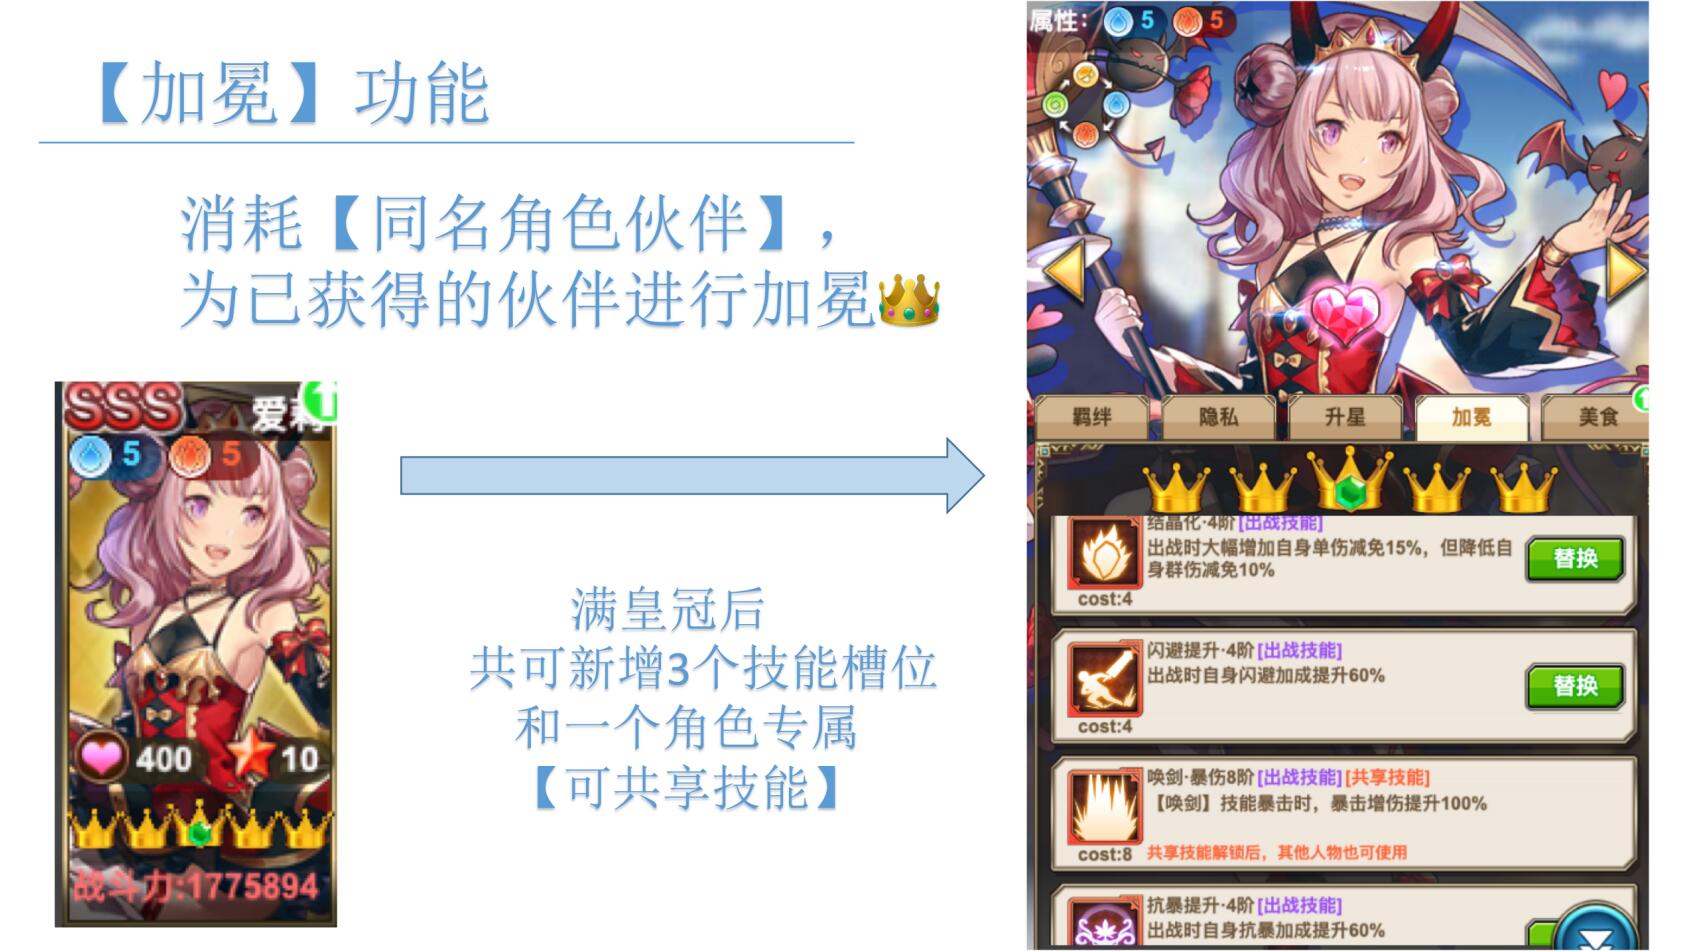 《绯雨骑士团2》新版本【为爱加冕】预告